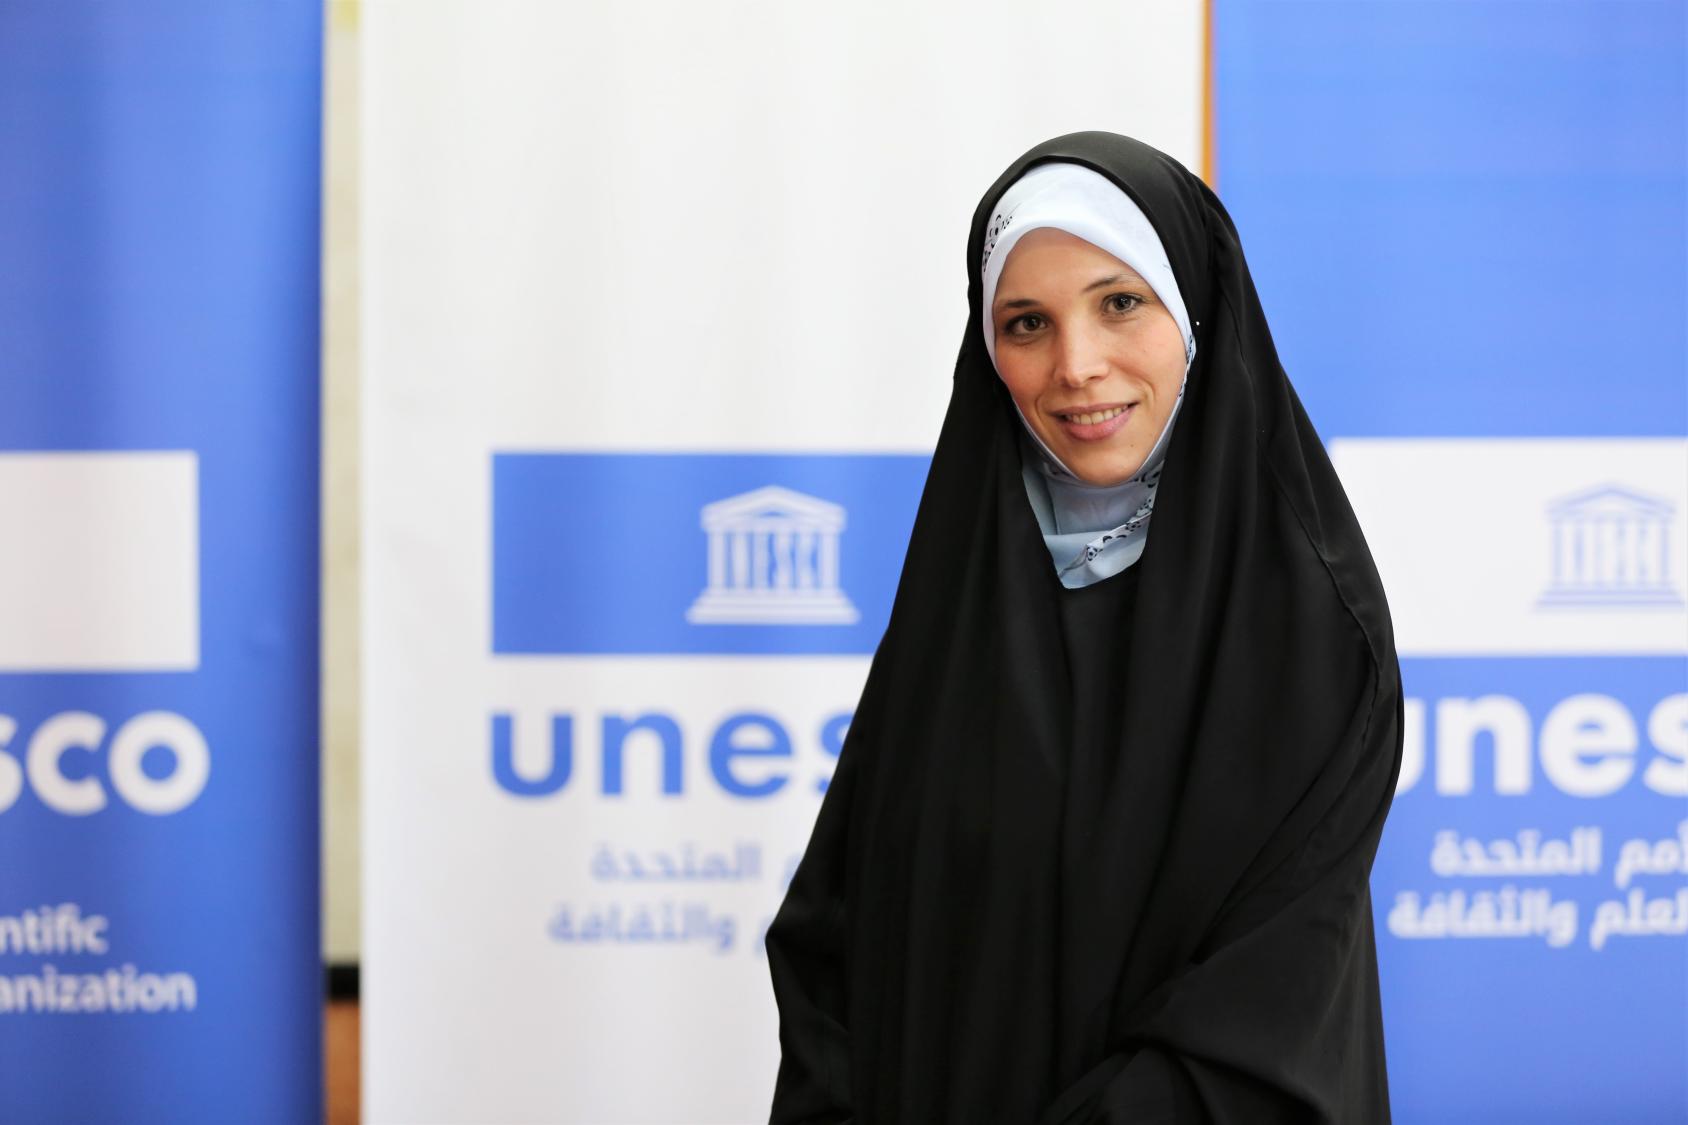 Una joven con un largo velo negro que le cubre el cuerpo y la cabeza posa sonriendo para la cámara. En el fondo hay grandes carteles azules y blancos con las palabras "UNESCO" debajo del logotipo de la organización.